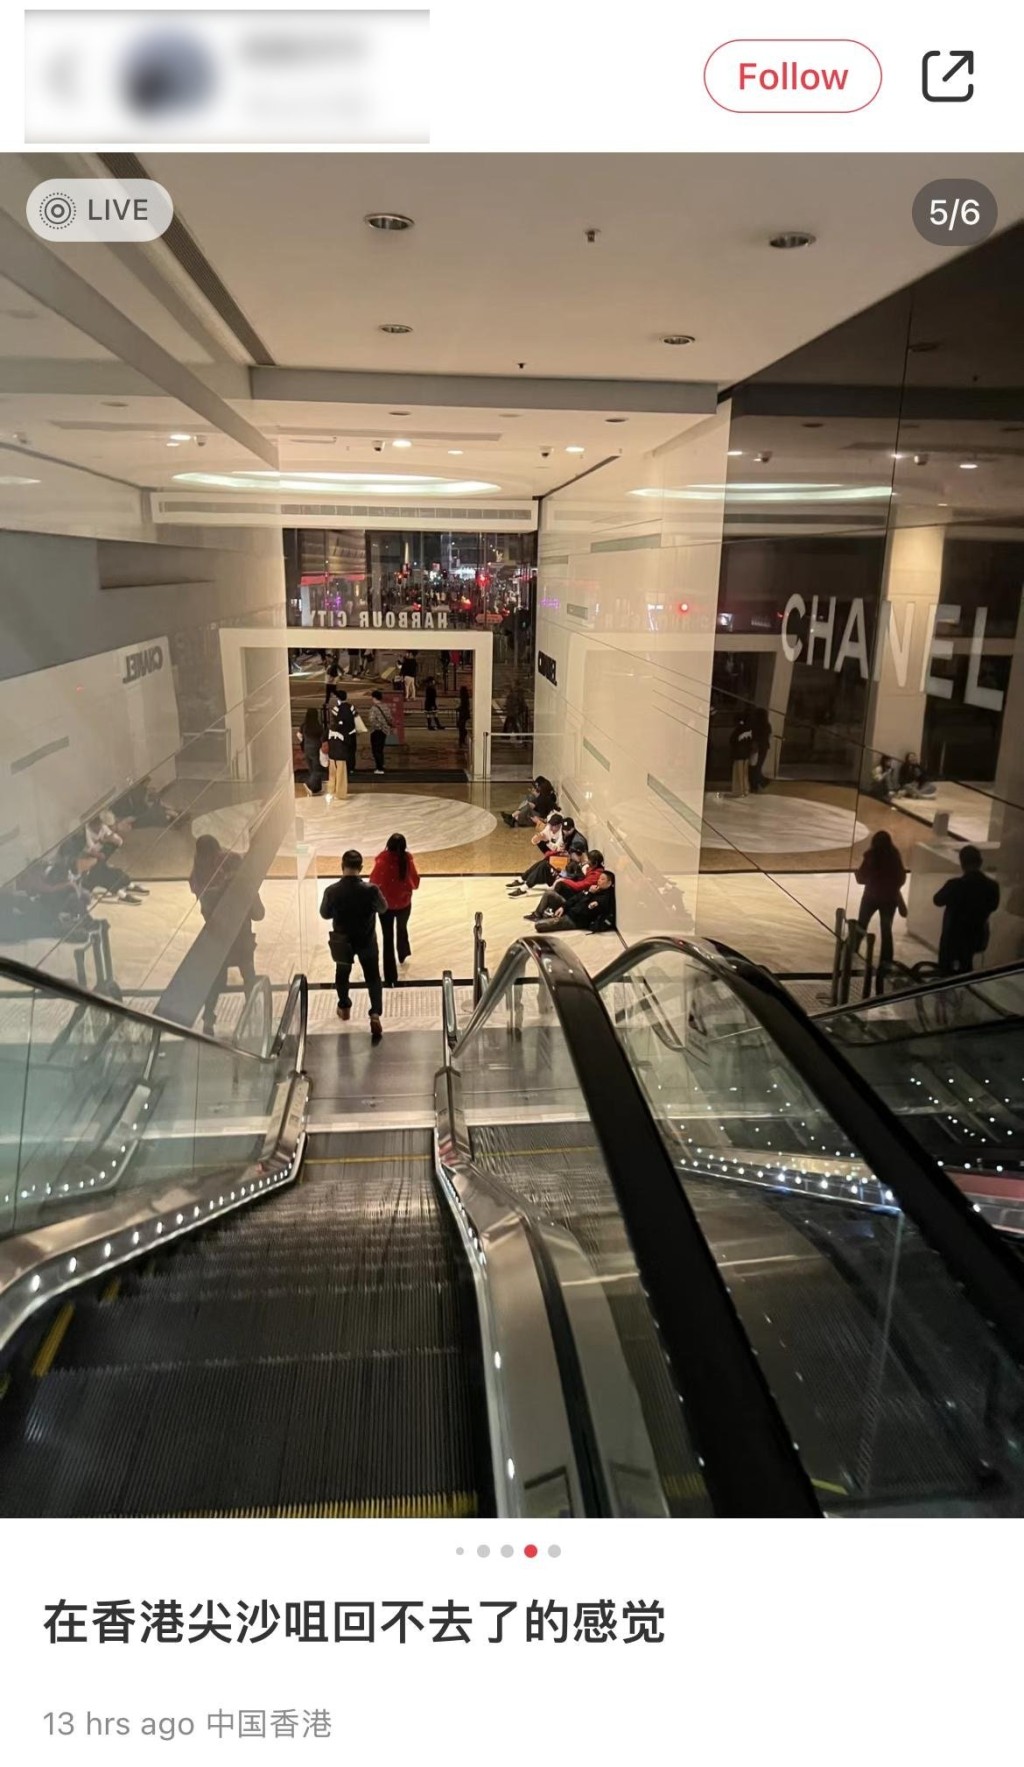 有旅客在海港城商場靠著墻坐在地板上，名店CHANEL門外亦出現滯留旅客的身影。小紅書圖片